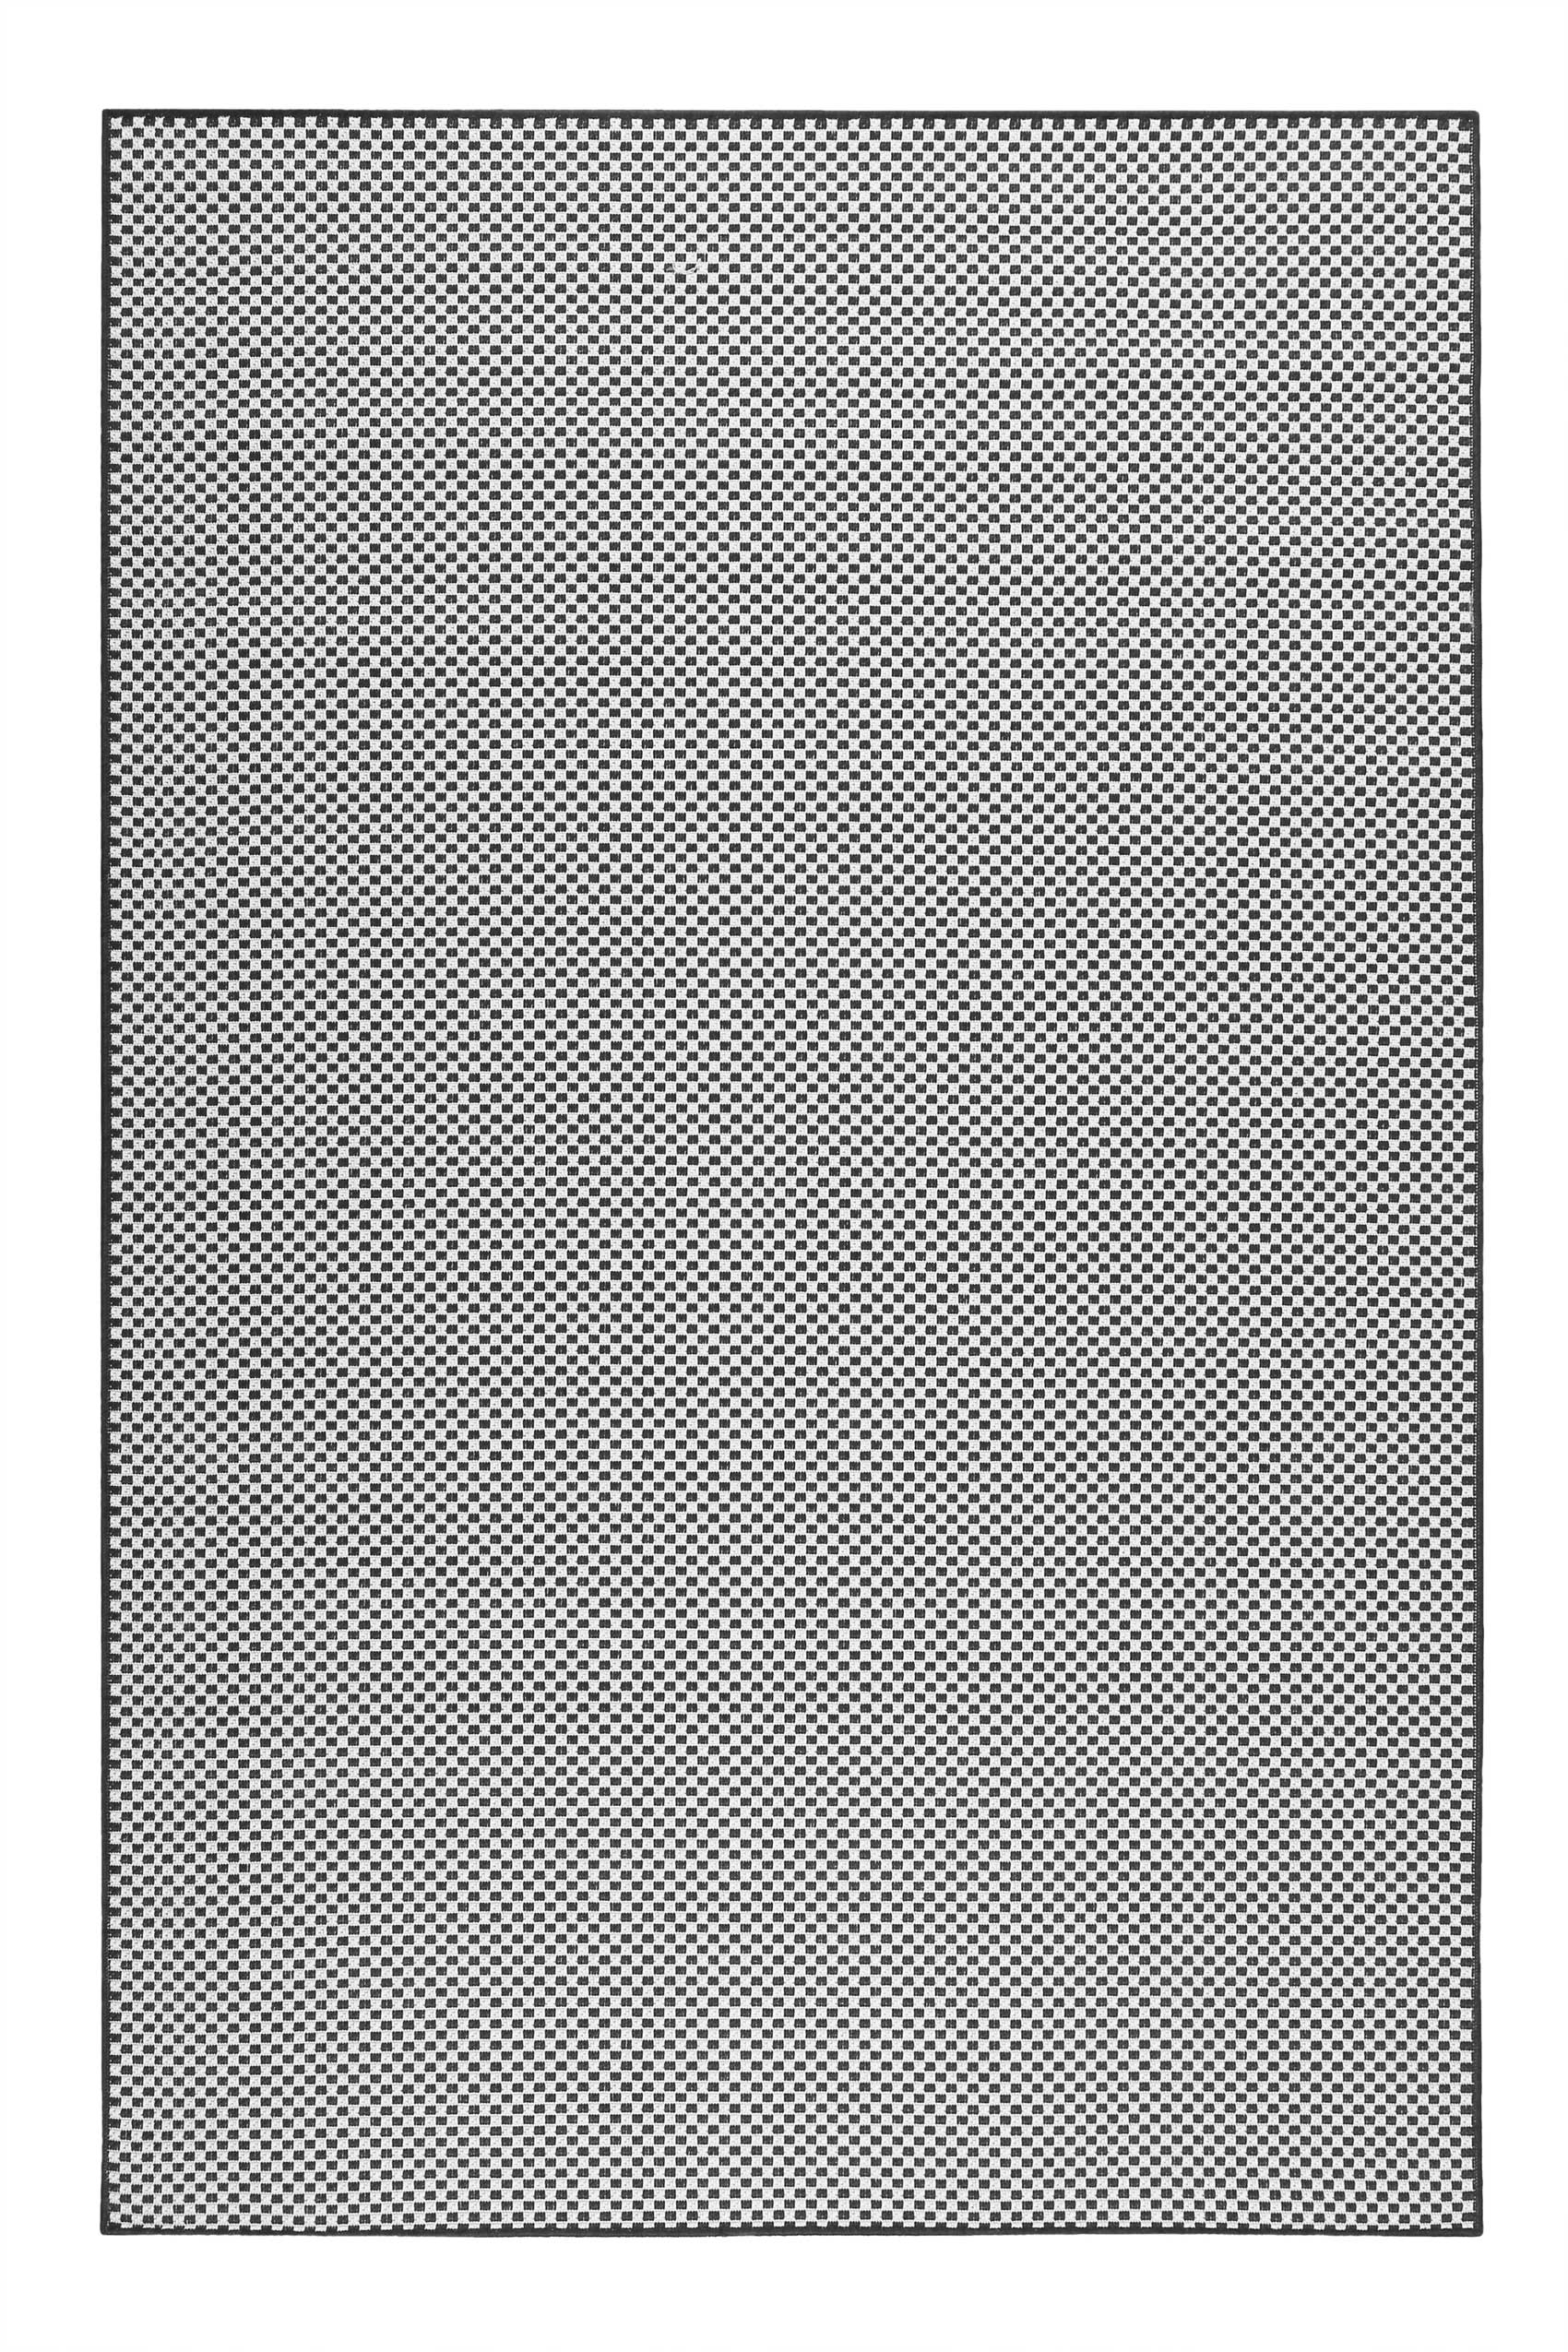 Tapis exterieur tissé plat motif damier blanc et noir 133x200